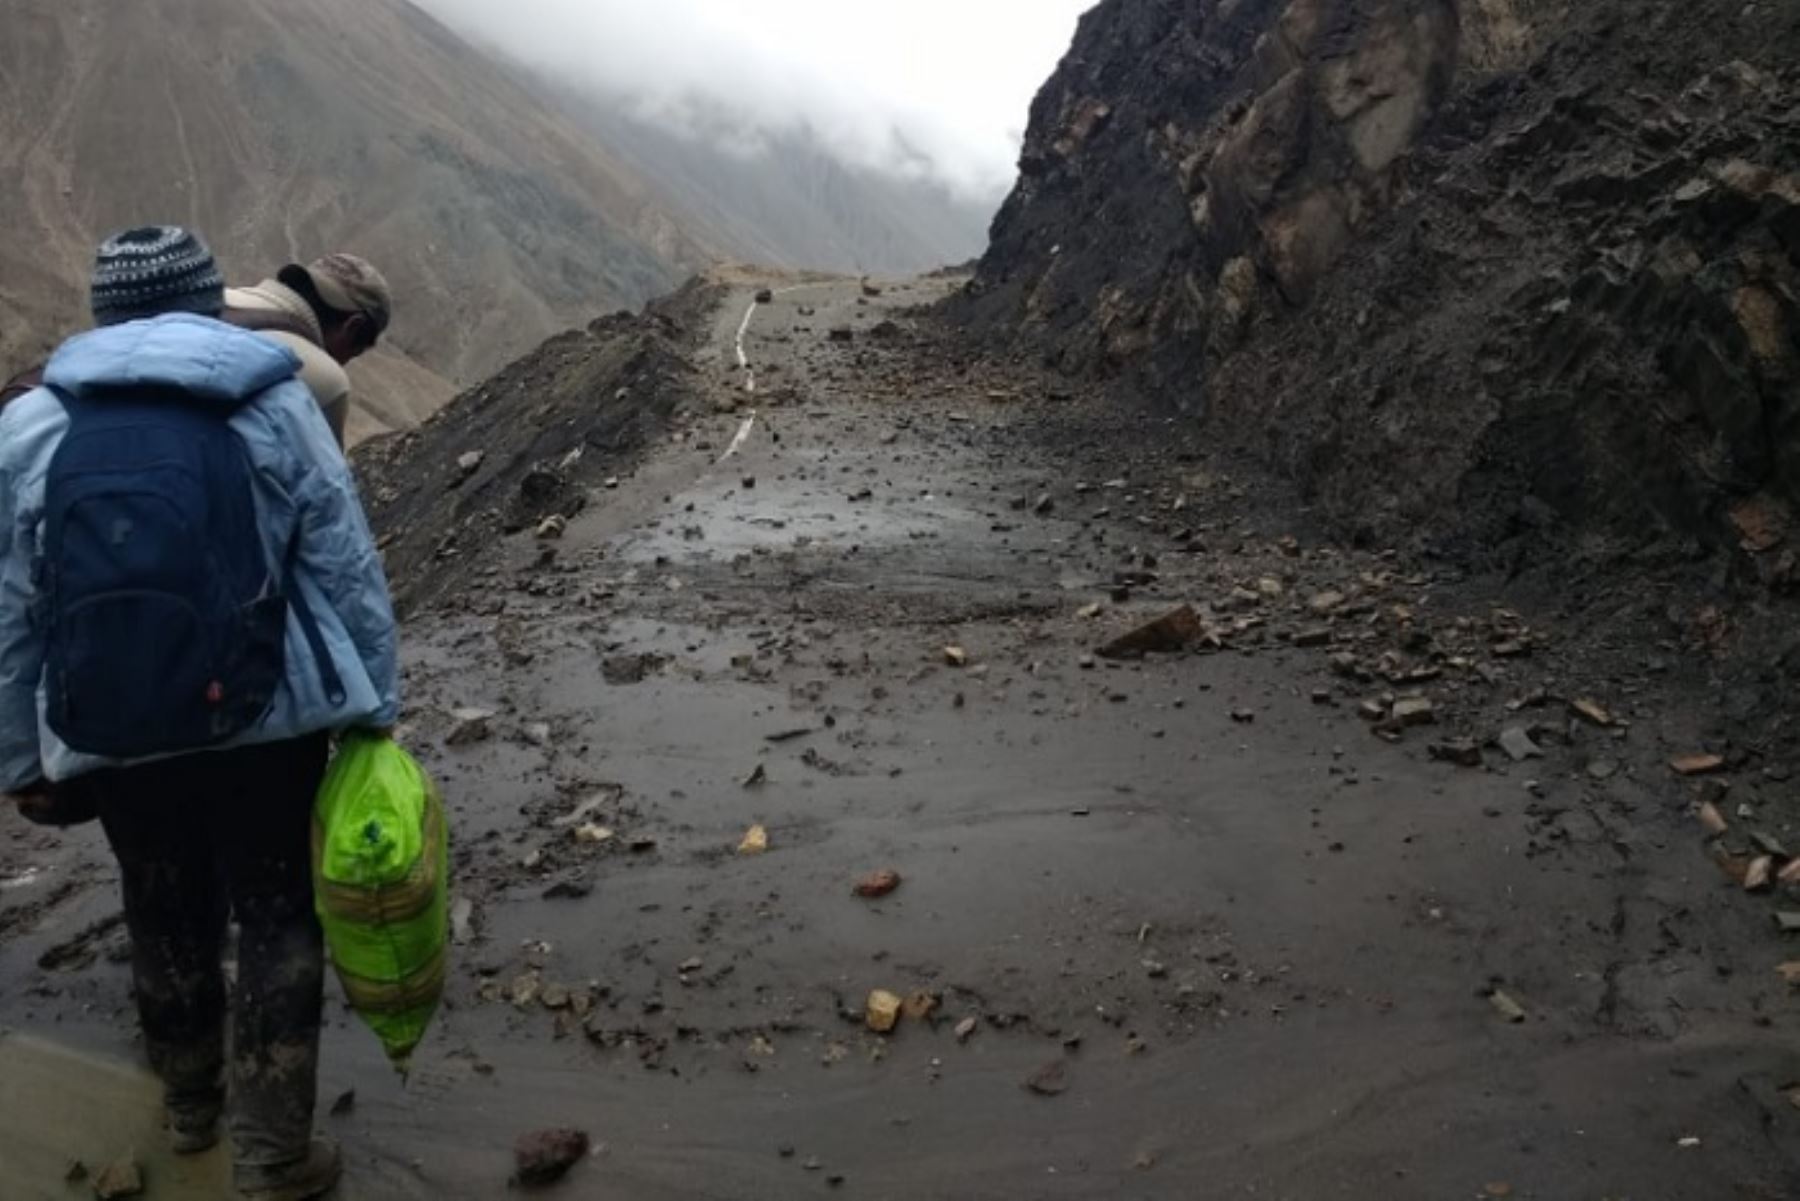 El COER Arequipa reportó la caída de piedras que afectaron el tránsito en la carretera a Uchumayo a causa del fuerte sismo de magnitud 5.4 registrado ayer en Moquegua.  ANDINA/Archivo